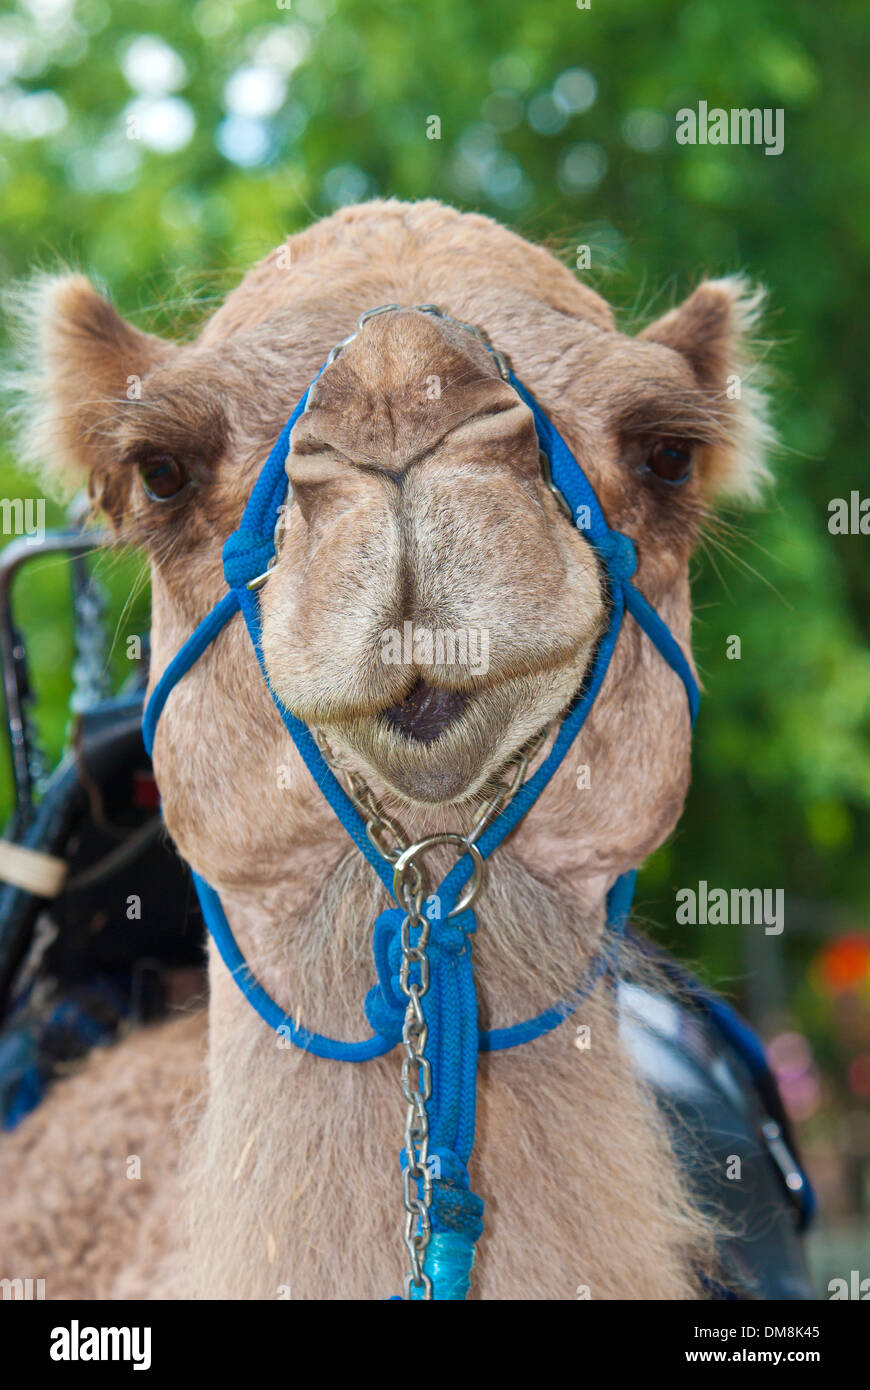 Camello, Animal retrato, cabeza, vista frontal Foto de stock